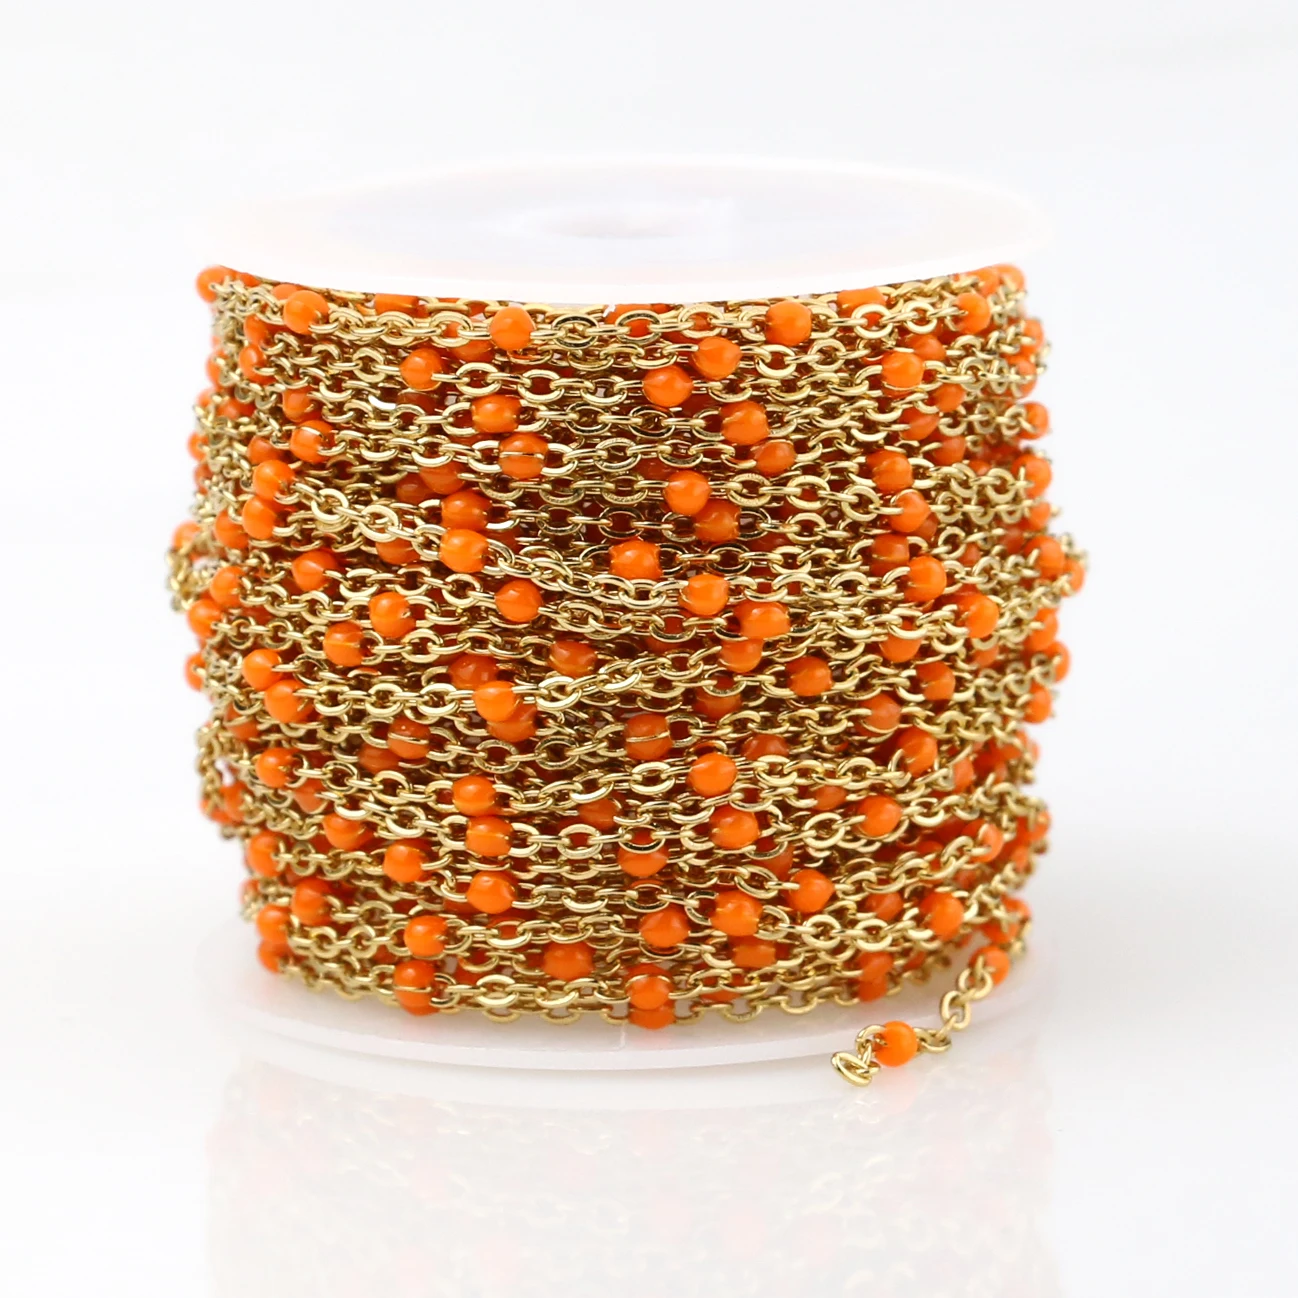 2 мм ширина нержавеющей стали золото/стальные цепи ювелирные изделия DIY эмаль овальный шар бисерная цепь для женщин ожерелье Браслеты ножной браслет - Цвет: Gold Orange